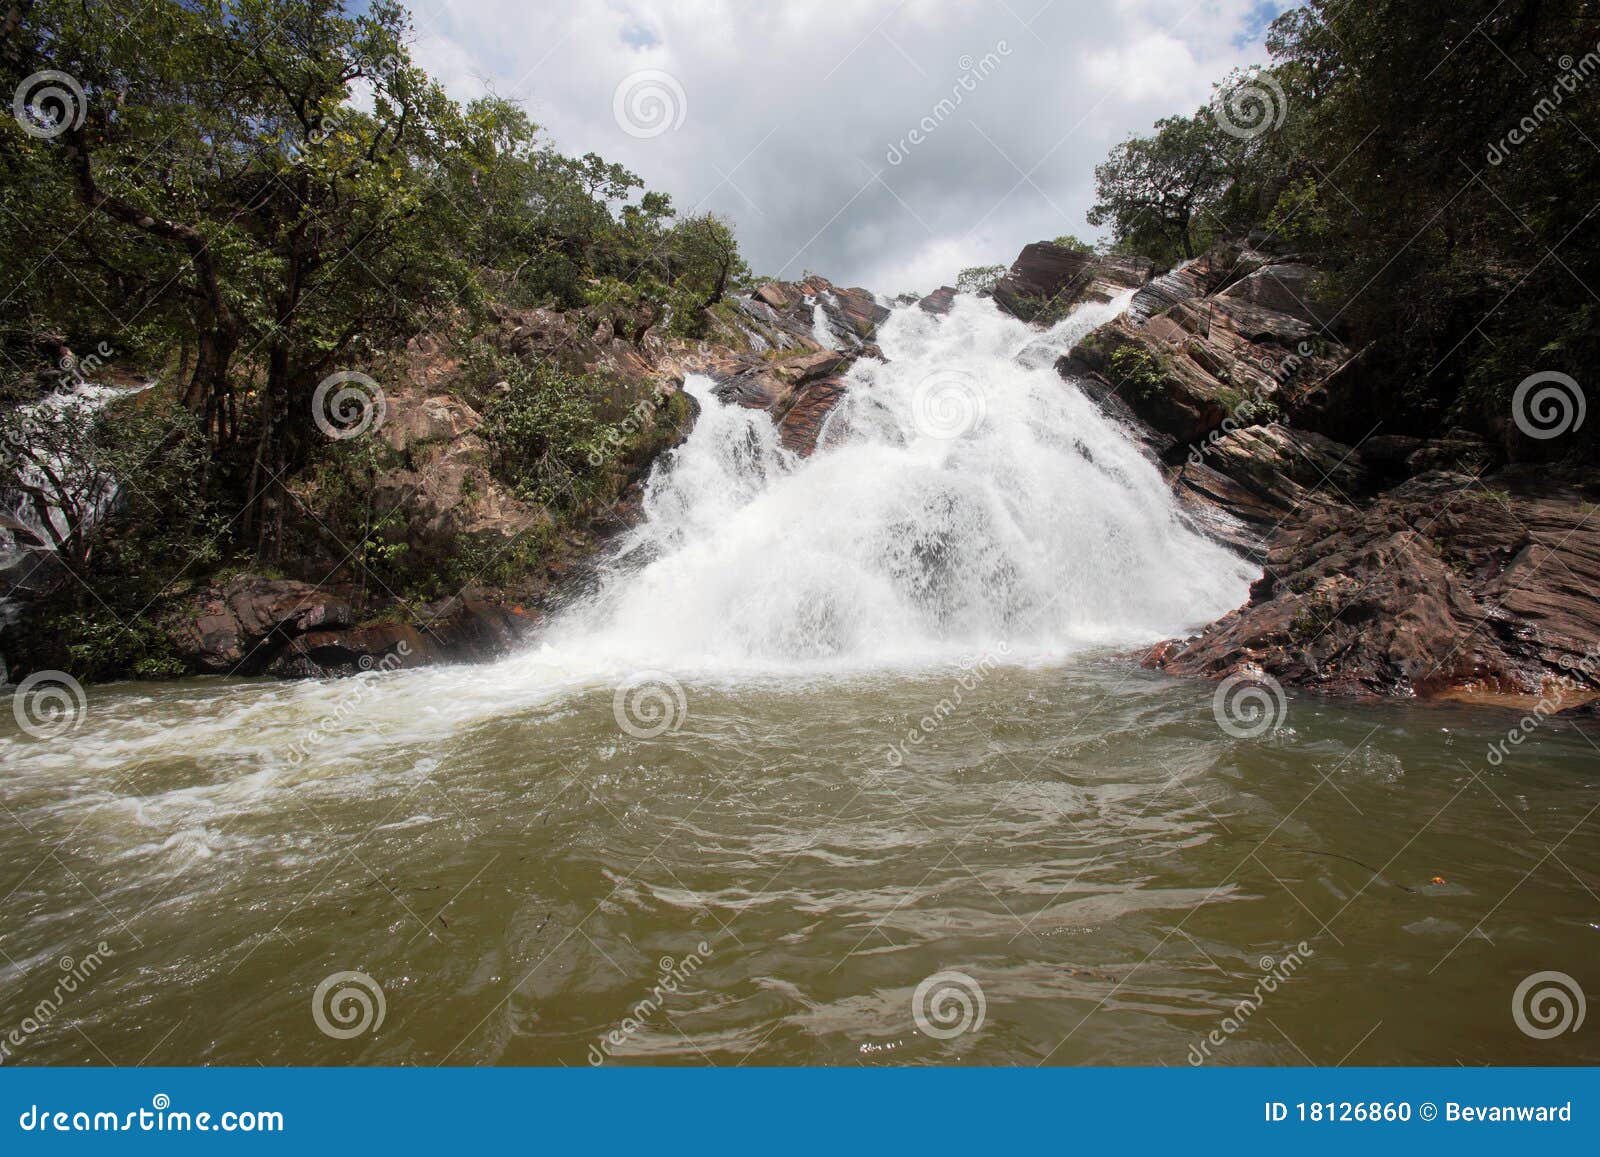 cachoeira santa maria waterfall goias brazil